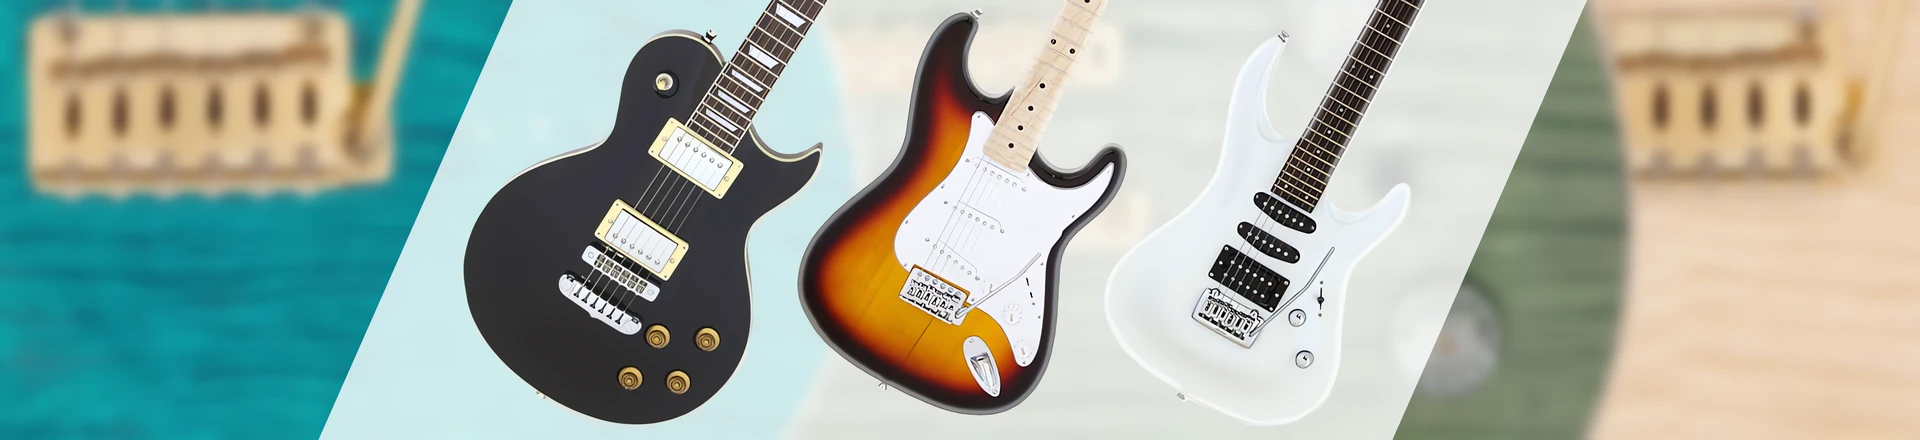 Gitary ARIA "Made in Japan" - ciekawe propozycje